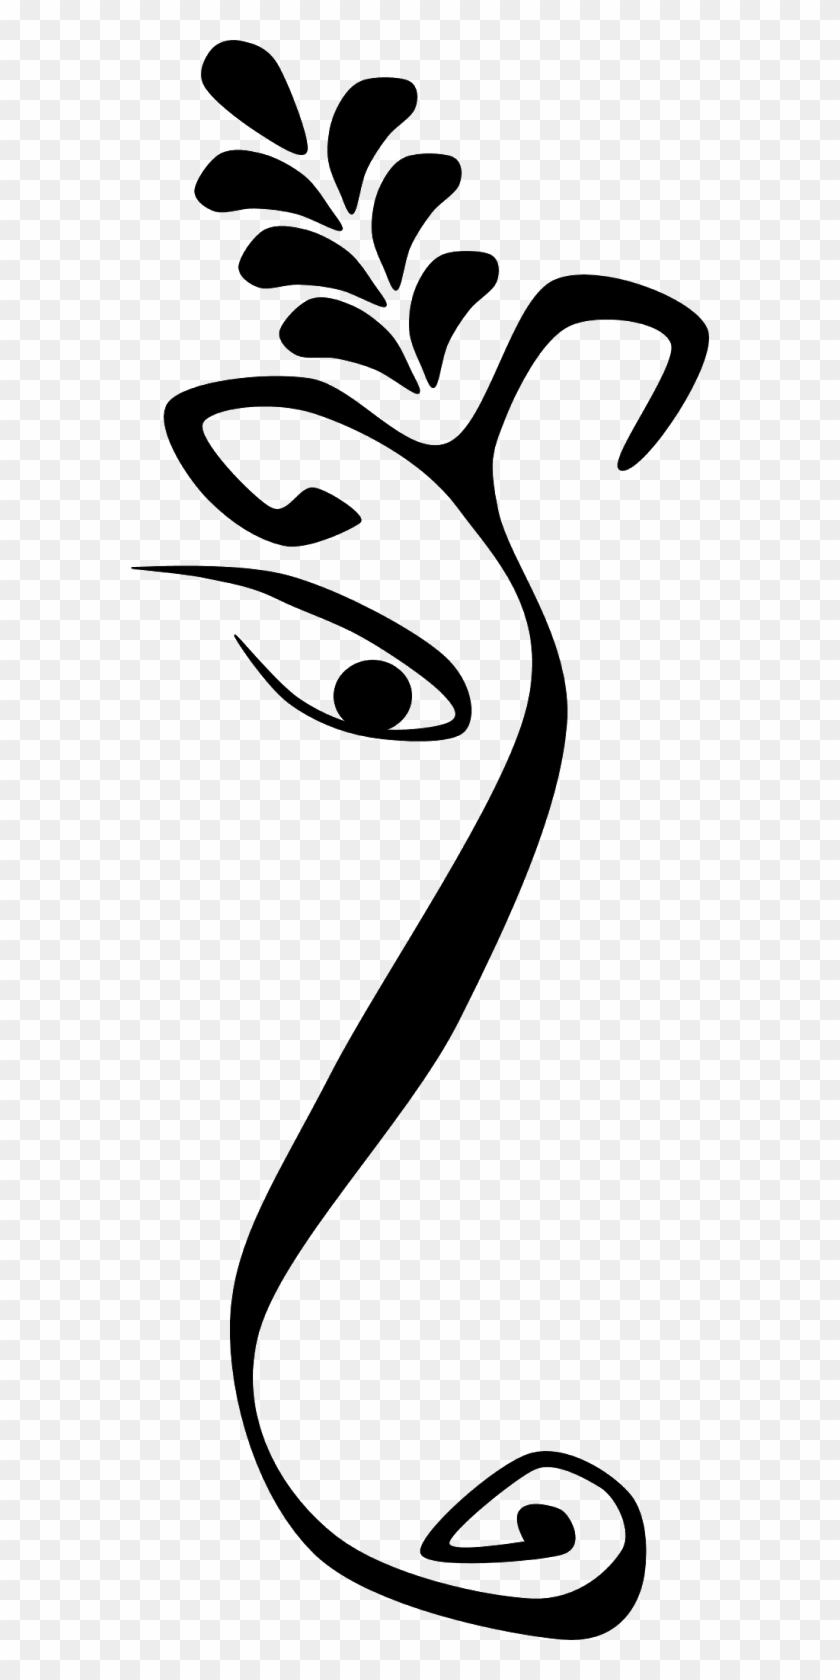 Ganesha Line Art Clip Art - Ganpati Clipart Black And White #418760